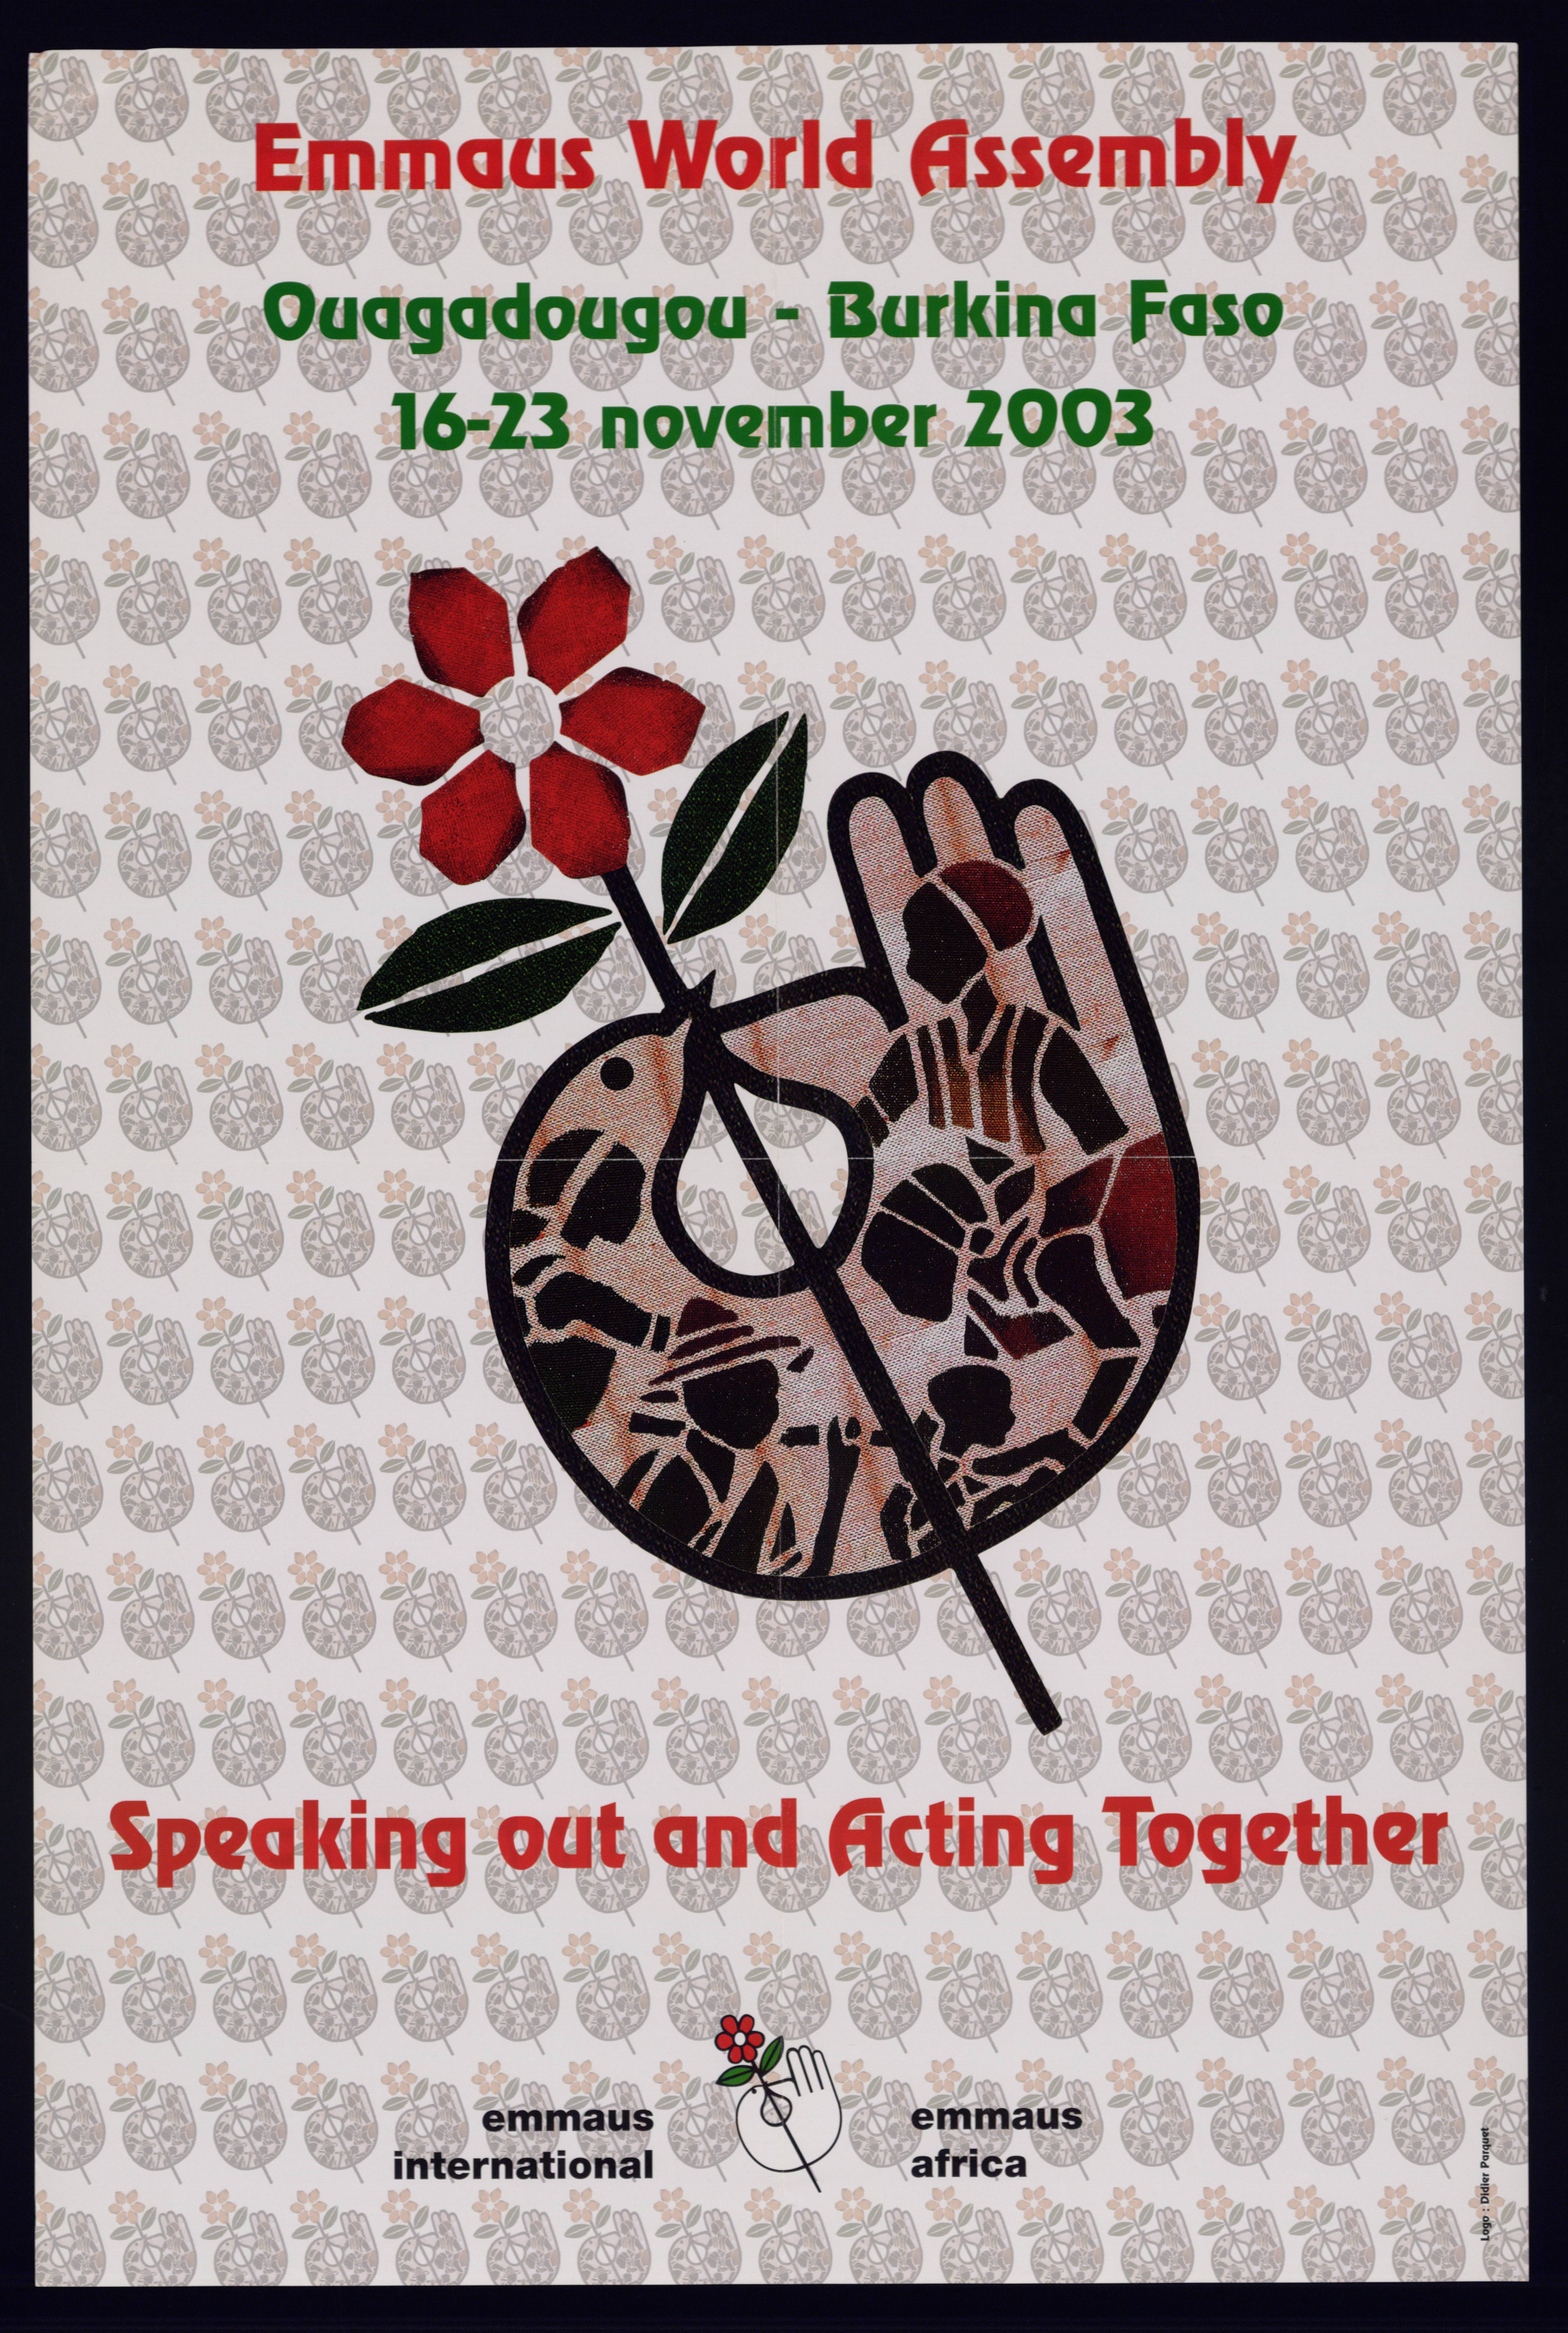 Affiches de la dixième assemblée mondiale s'étant déroulée à Ouagadougou (Burkina Faso) en 2003.